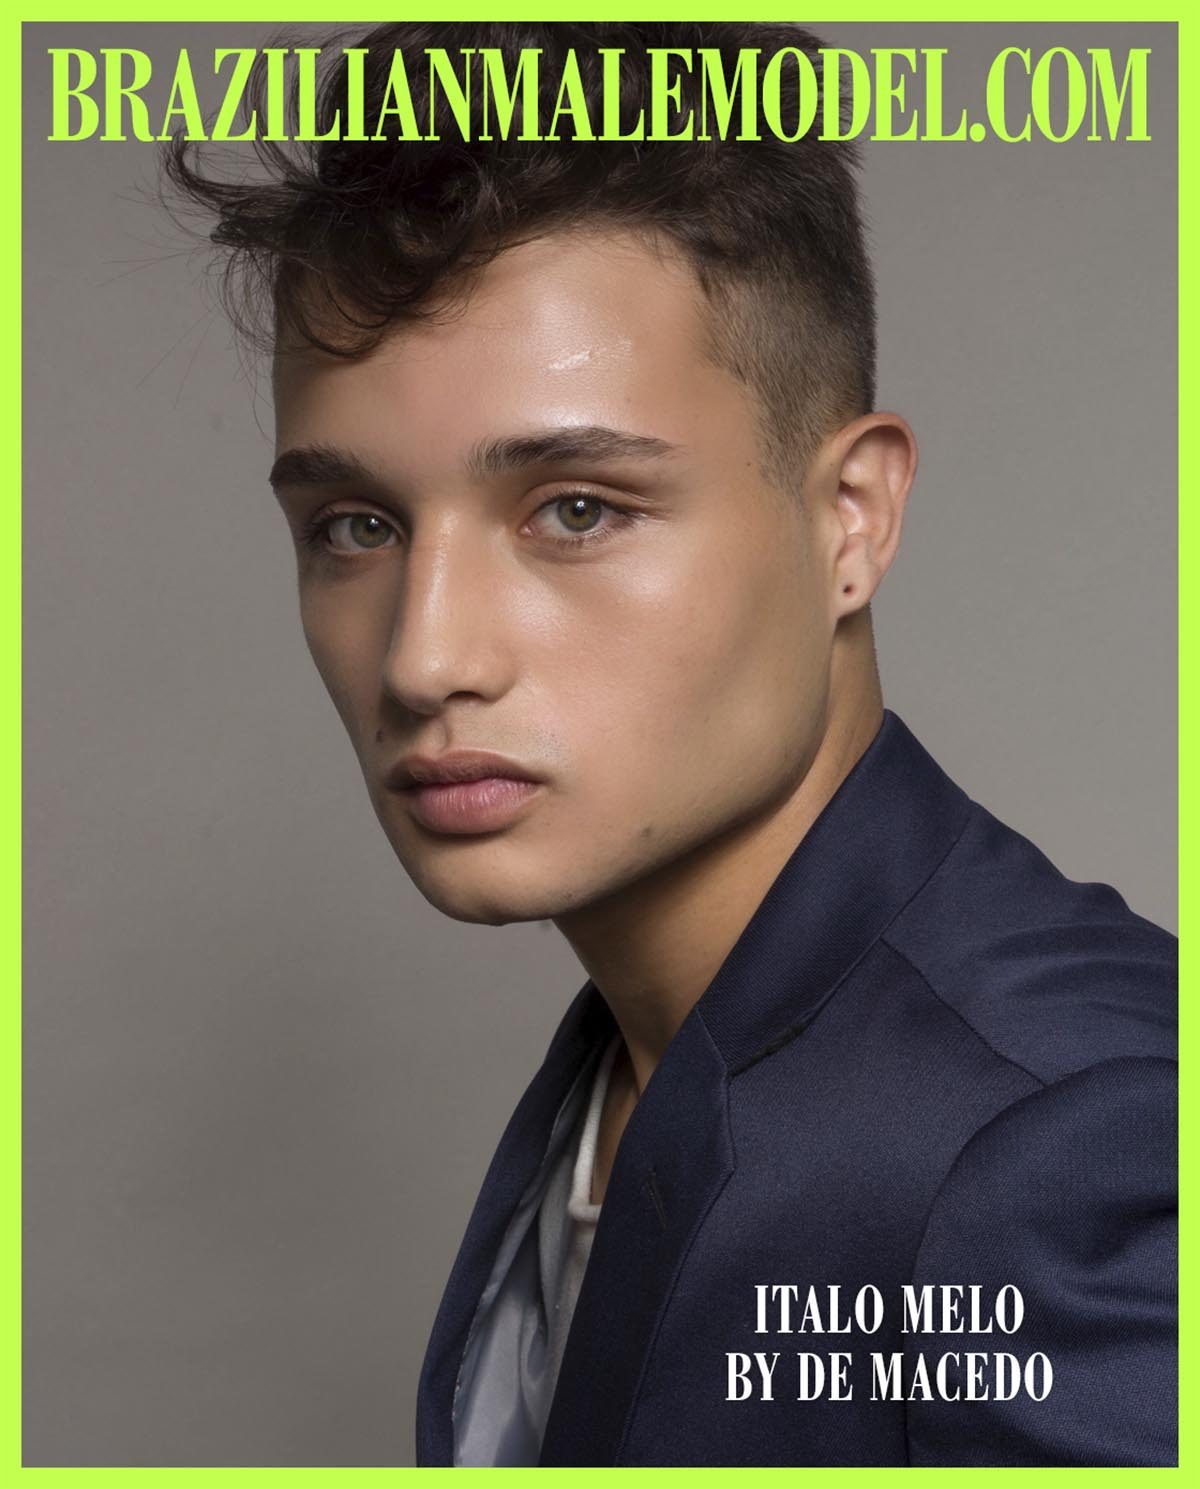 Italo Melo by De Macedo